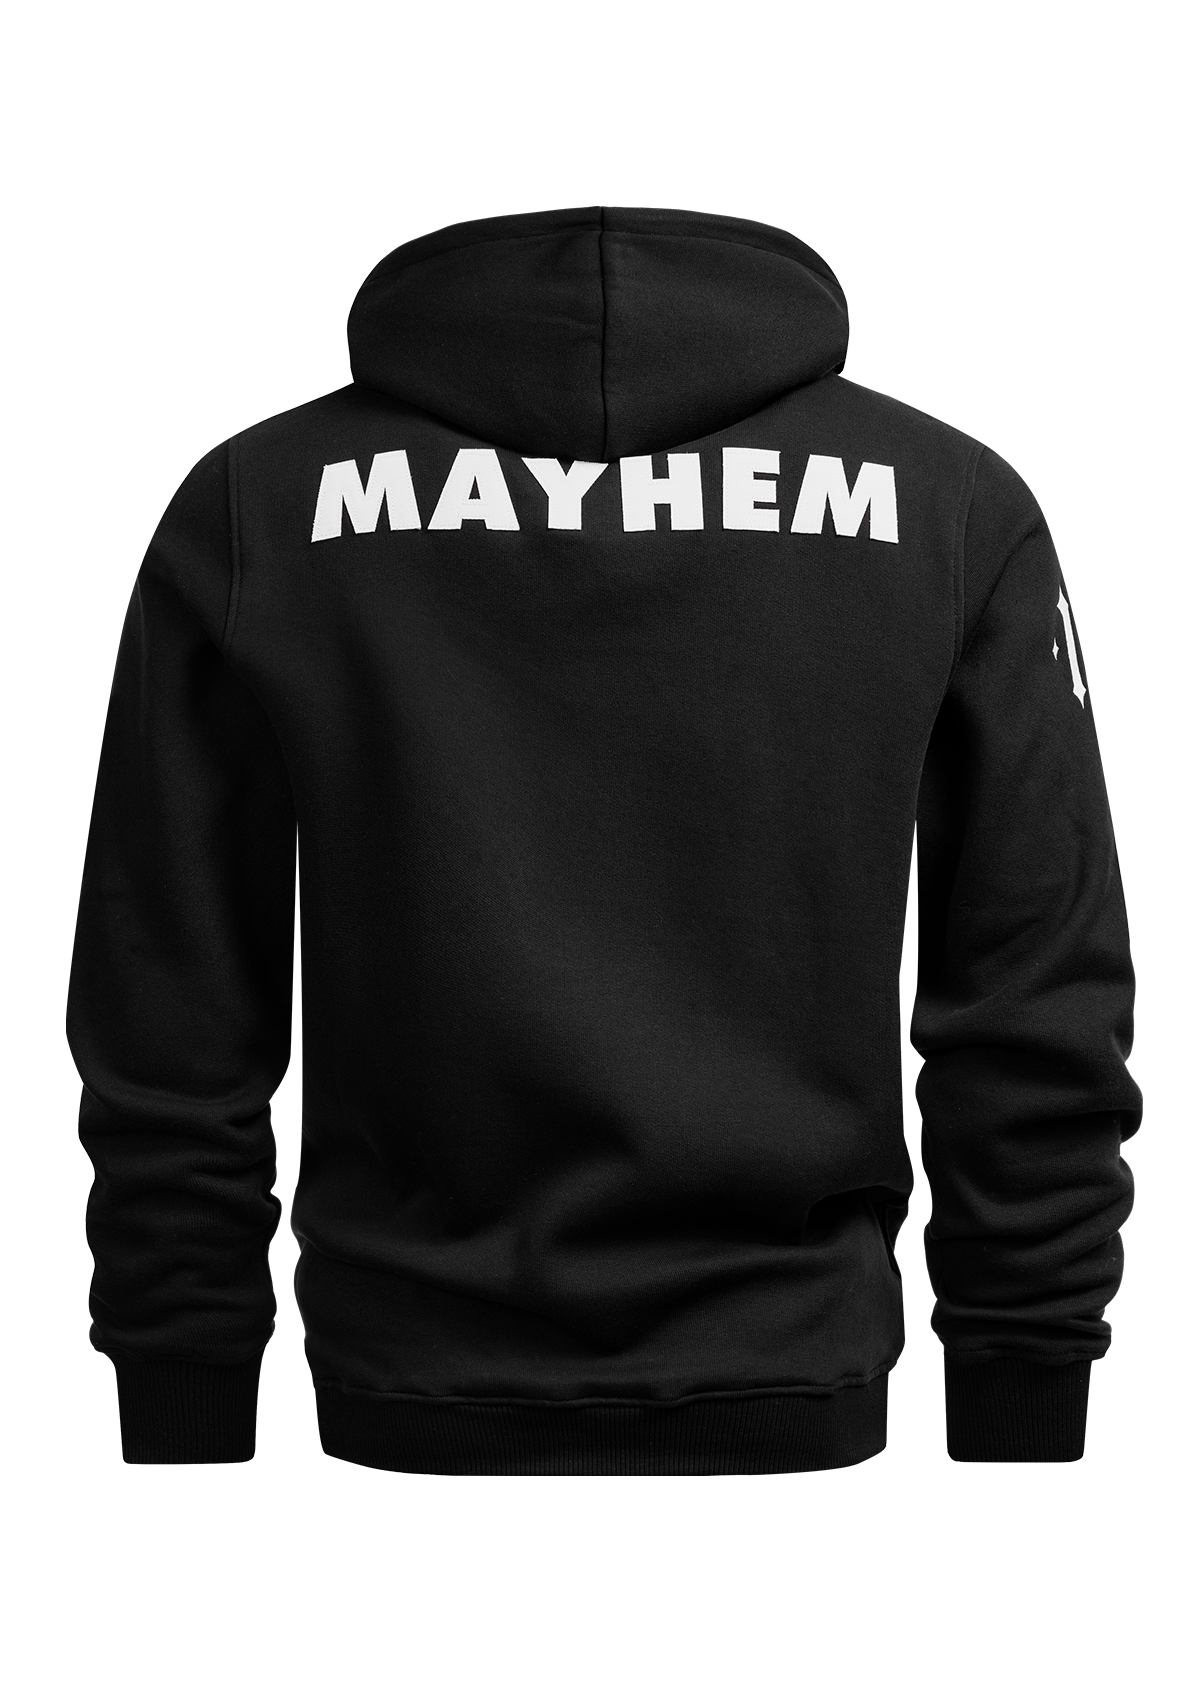 Hoody Mayhem Revolt S/W MK3